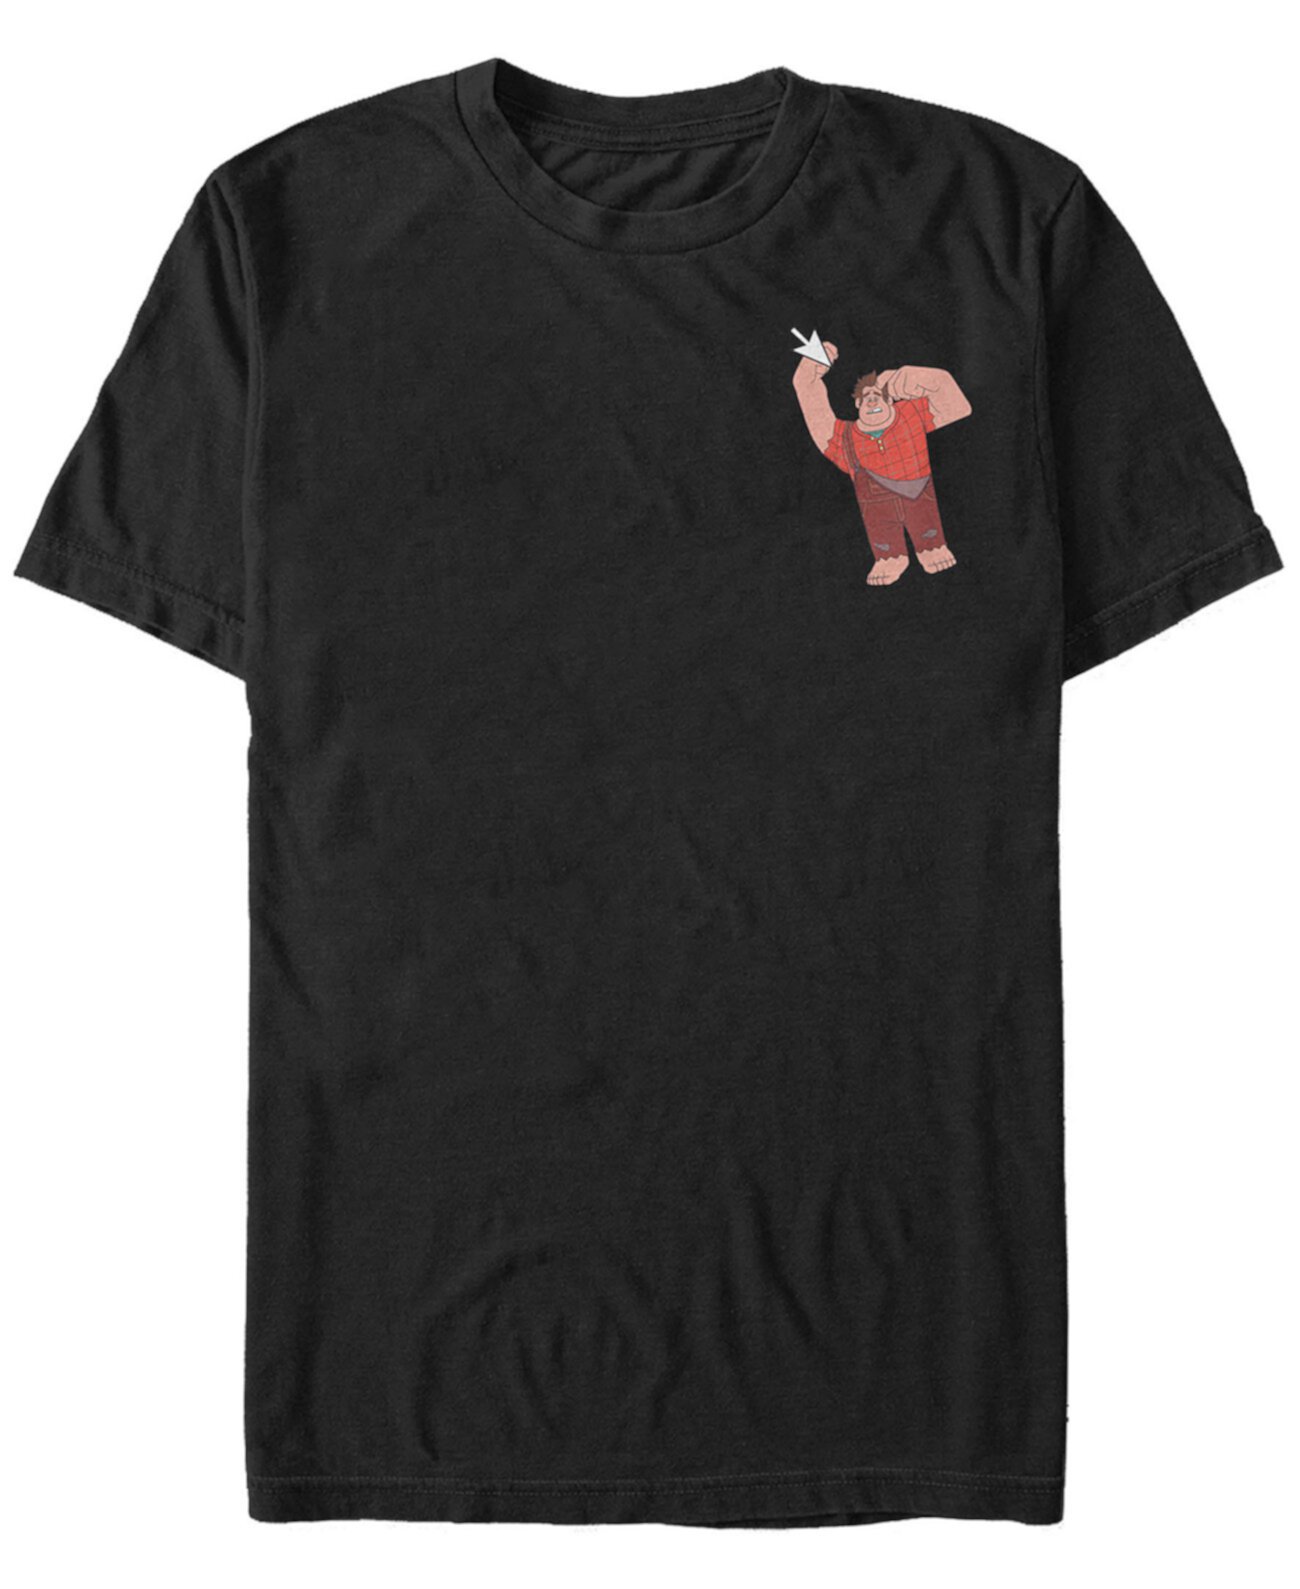 Wreck-It Ralph 2 Мужская левая грудь Выбрать футболку с коротким рукавом FIFTH SUN